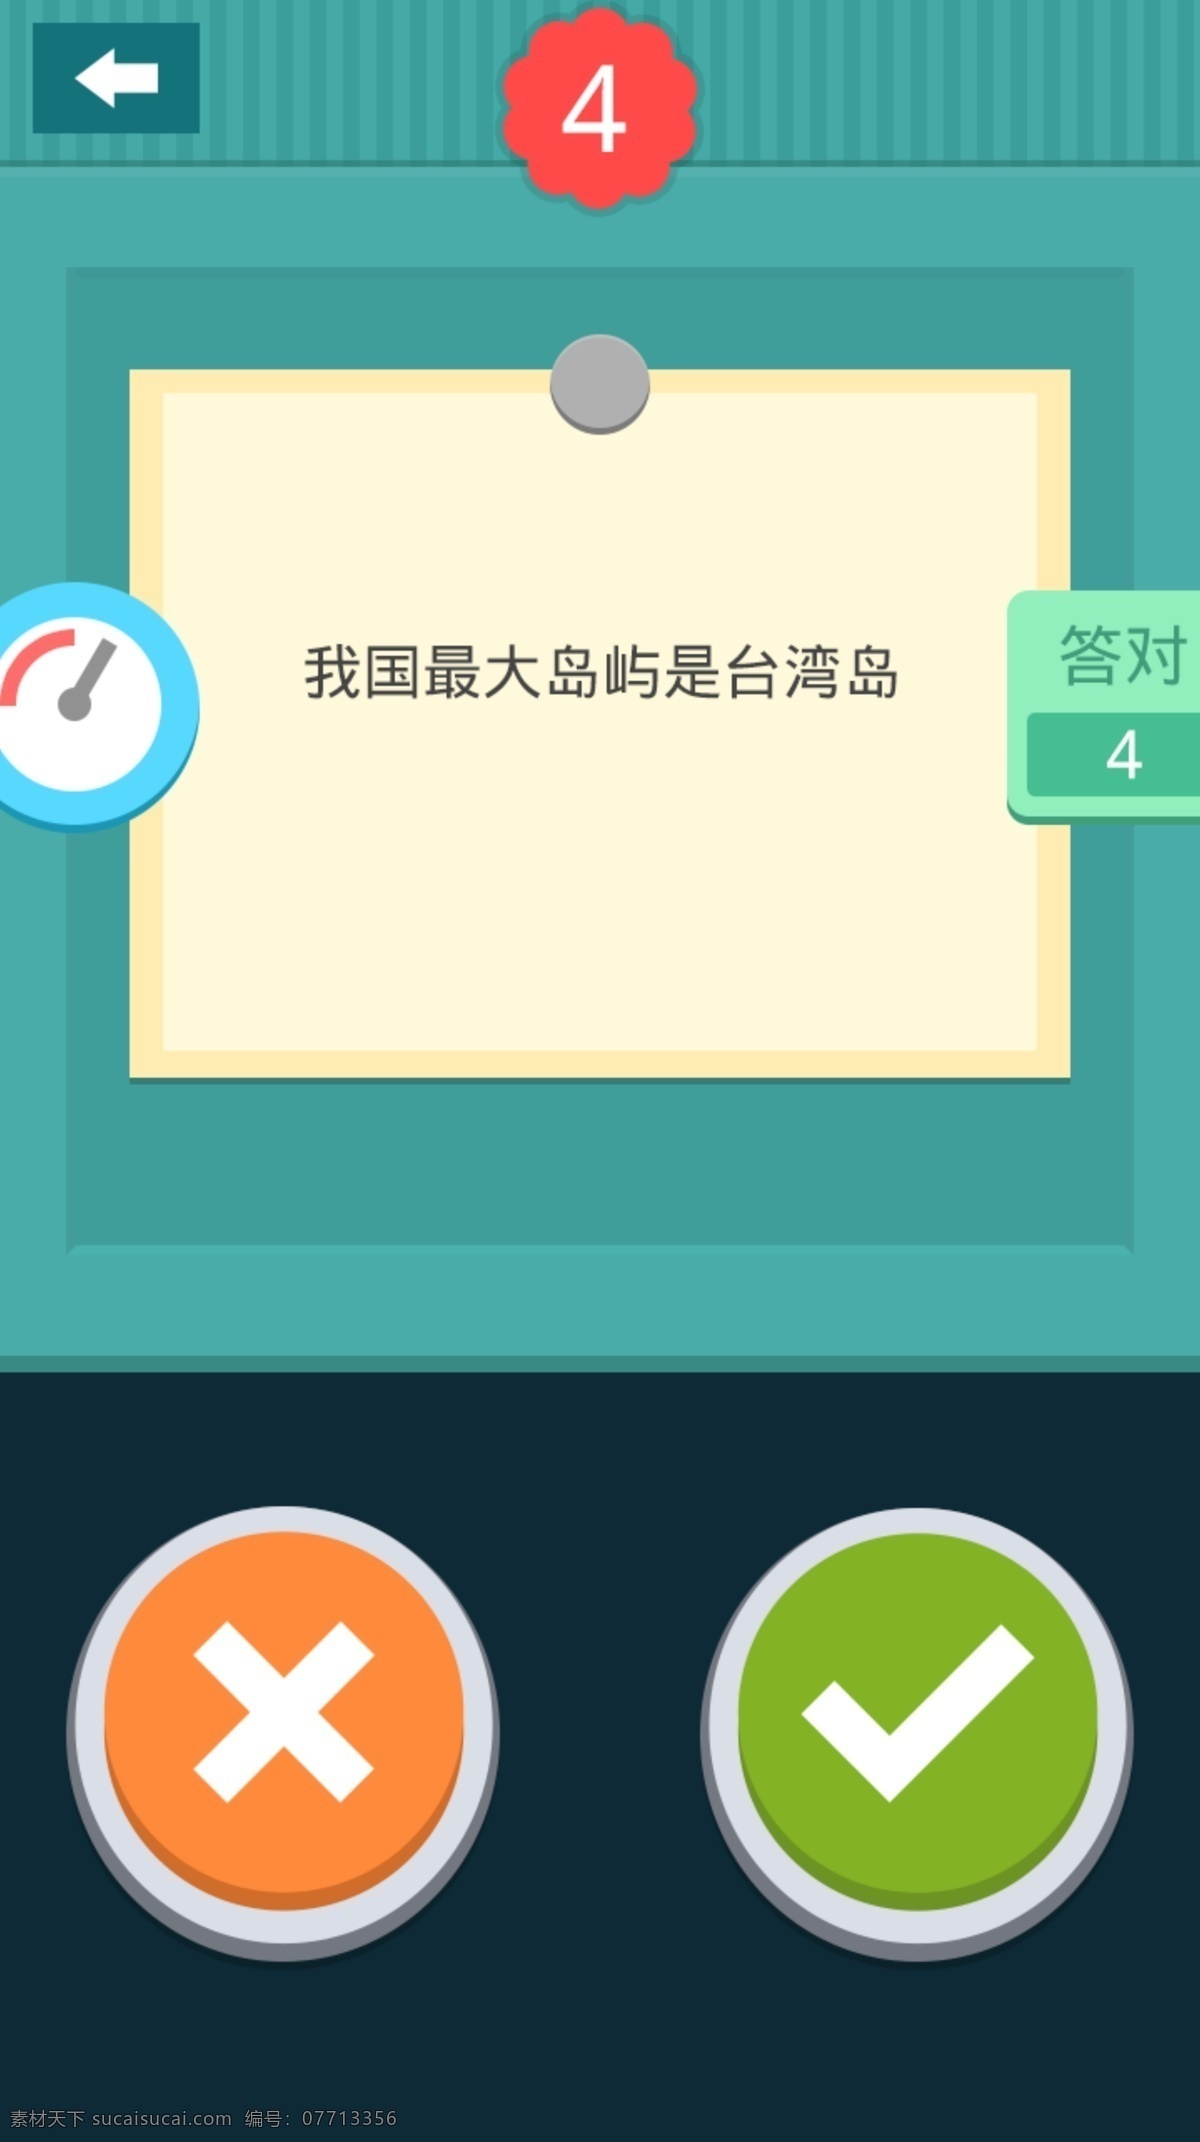 扁平化设计 网页模板 游戏界面 源文件 中文模板 模板下载 小游戏 界面样式 网页素材